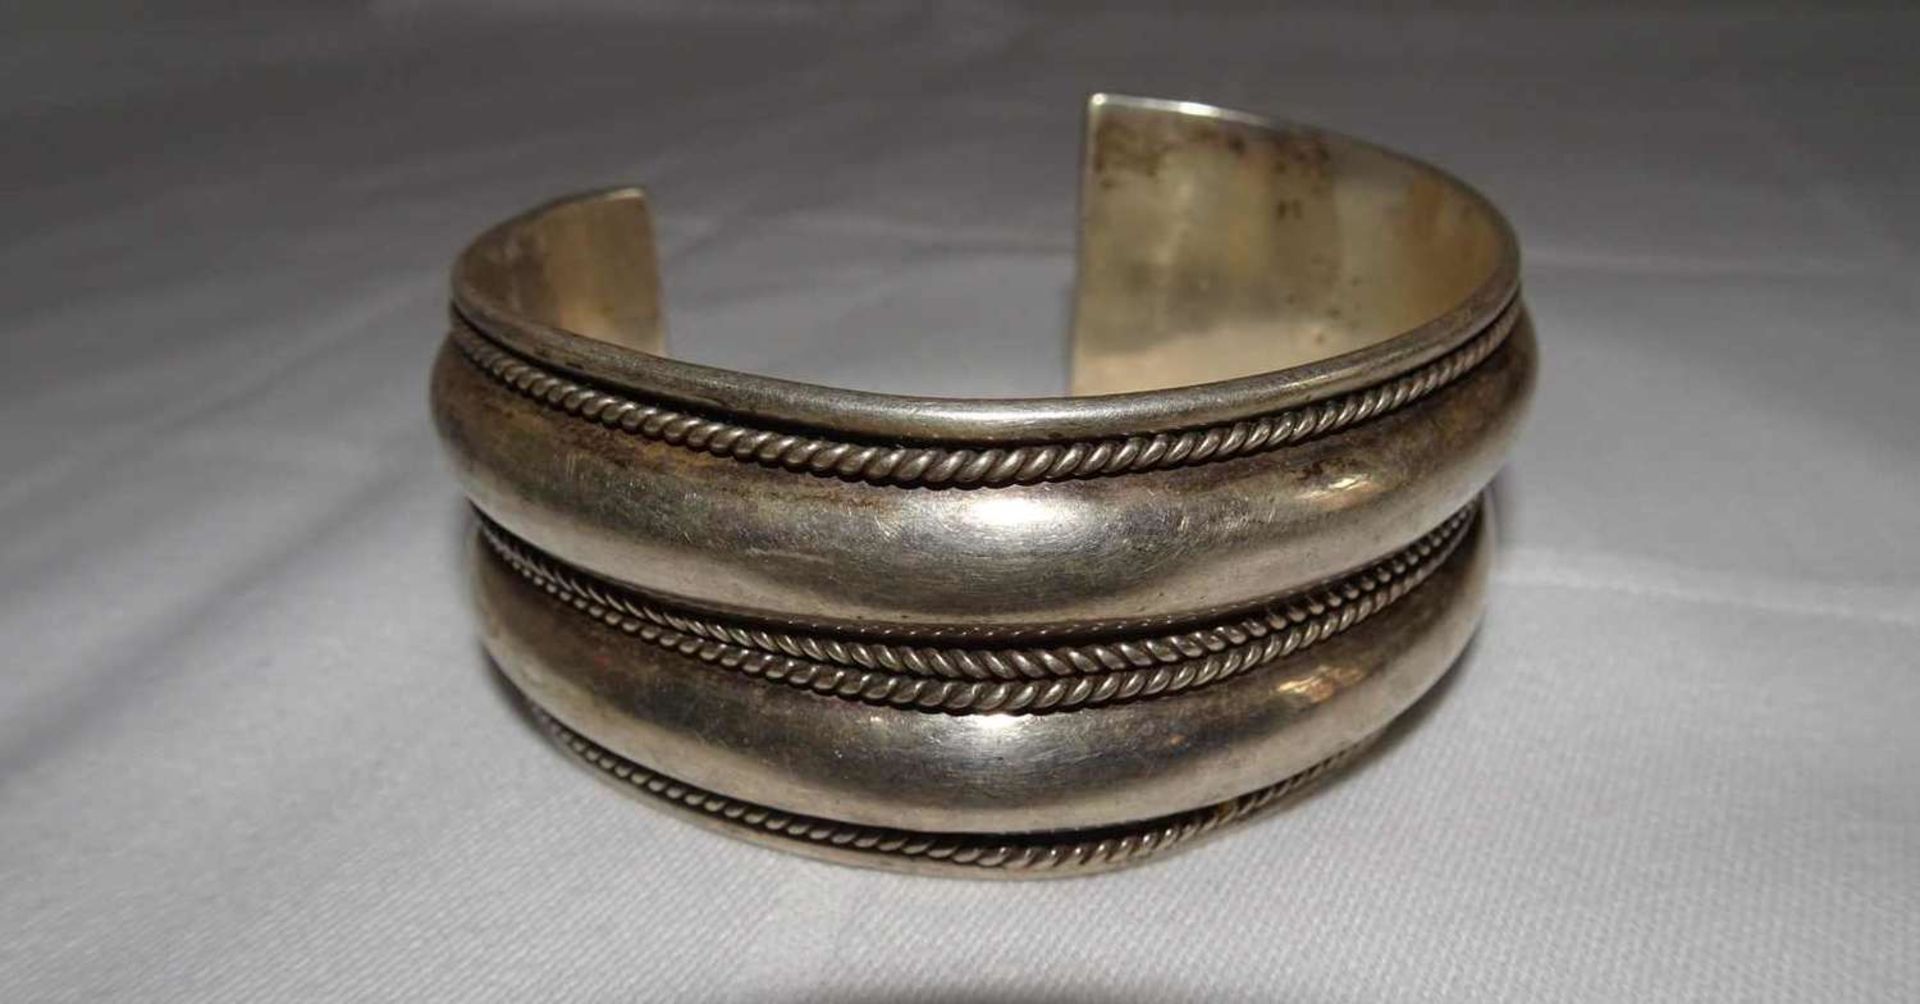 Armreif, 925er Silber, offene Ringschiene. Gewicht ca. 50 gr. Bangle, 925 silver, open ring band. - Bild 2 aus 4